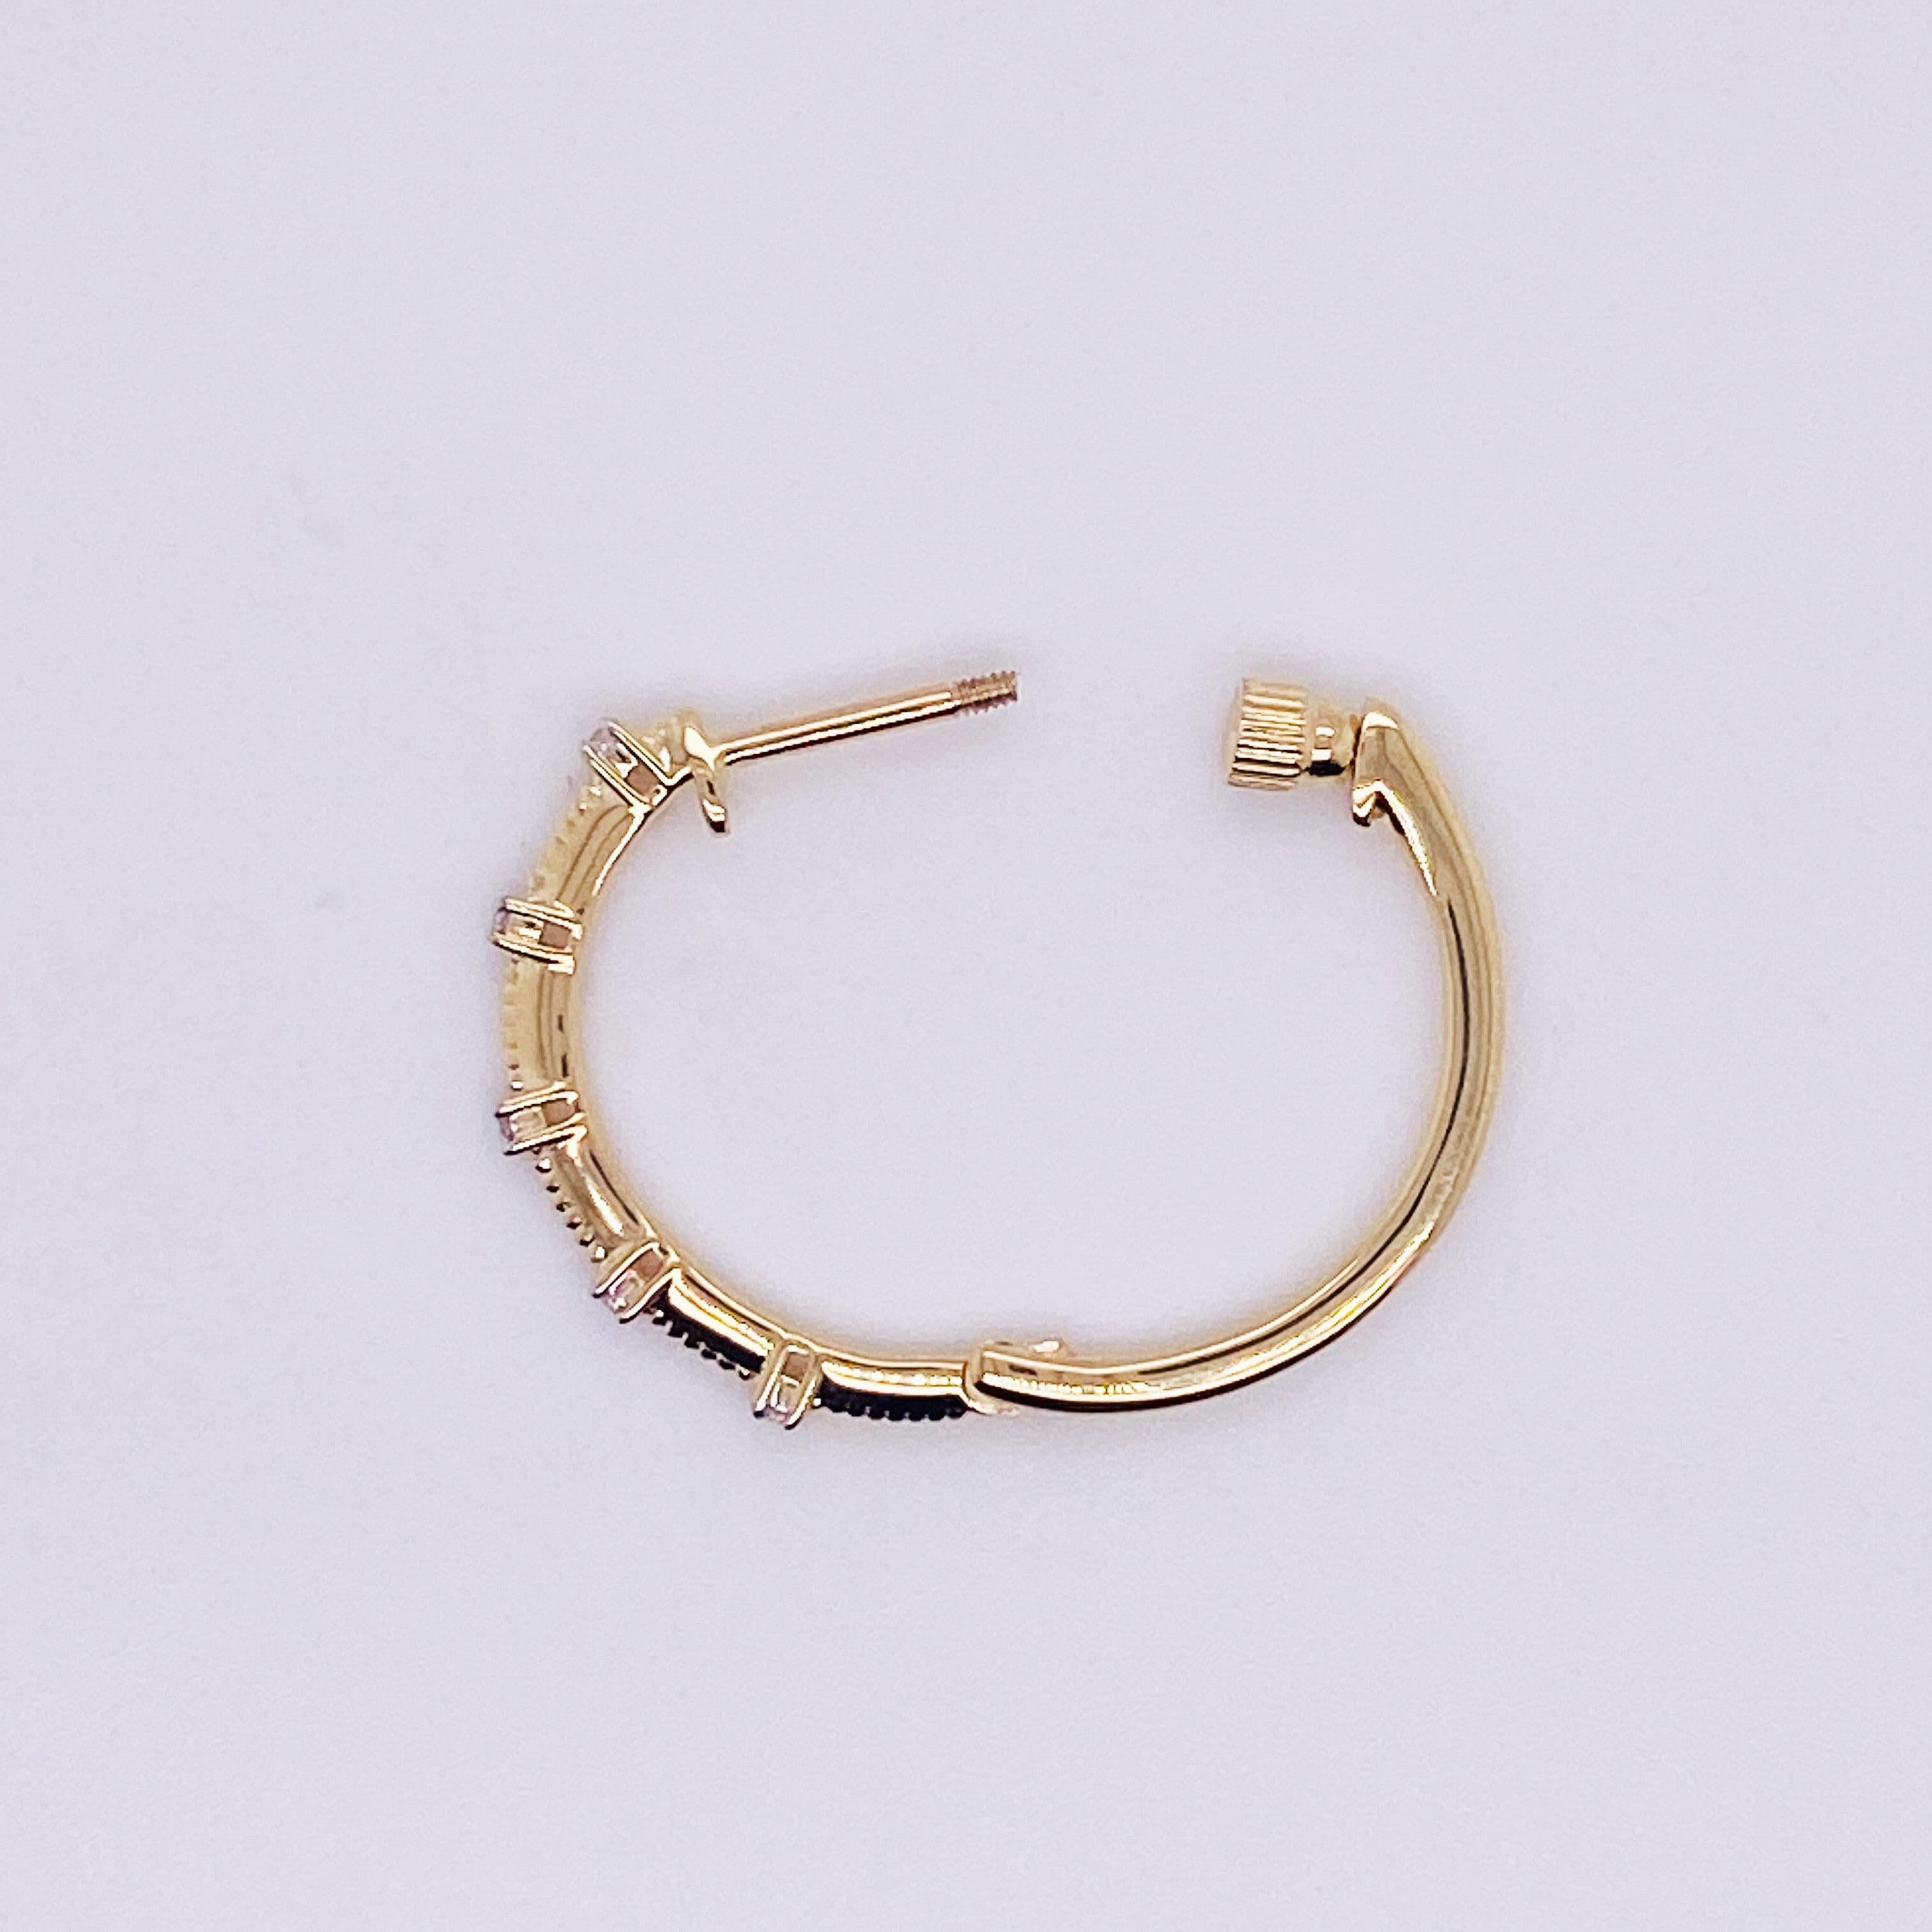 Diamond Station Threaded Hoop Earrings in 14k Yellow / White Gold, EG13761 LV For Sale 1